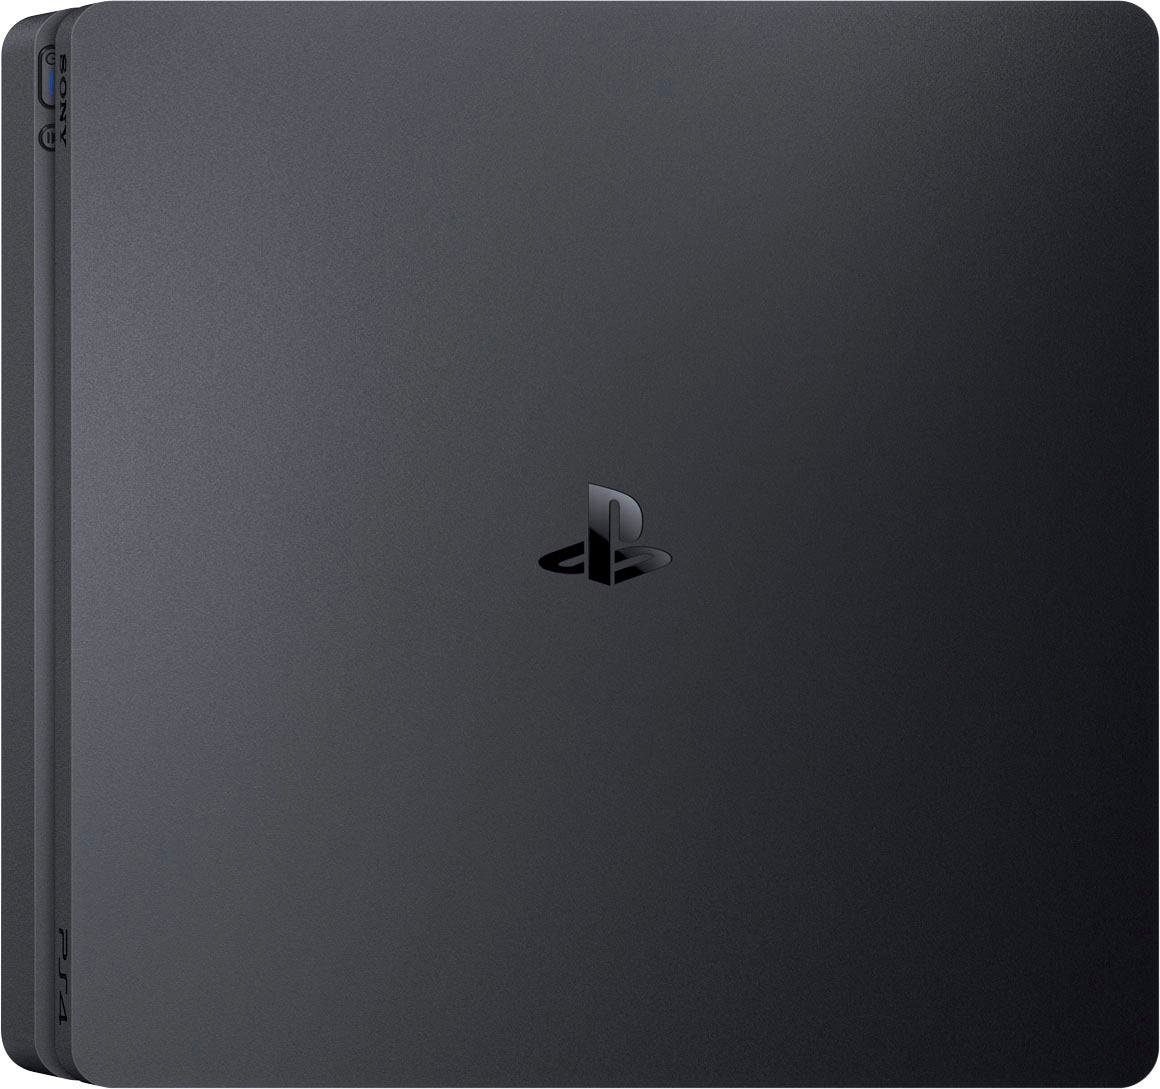 PlayStation 4 Konsolen-Set »Slim«, inkl. Spiderman Miles Morales